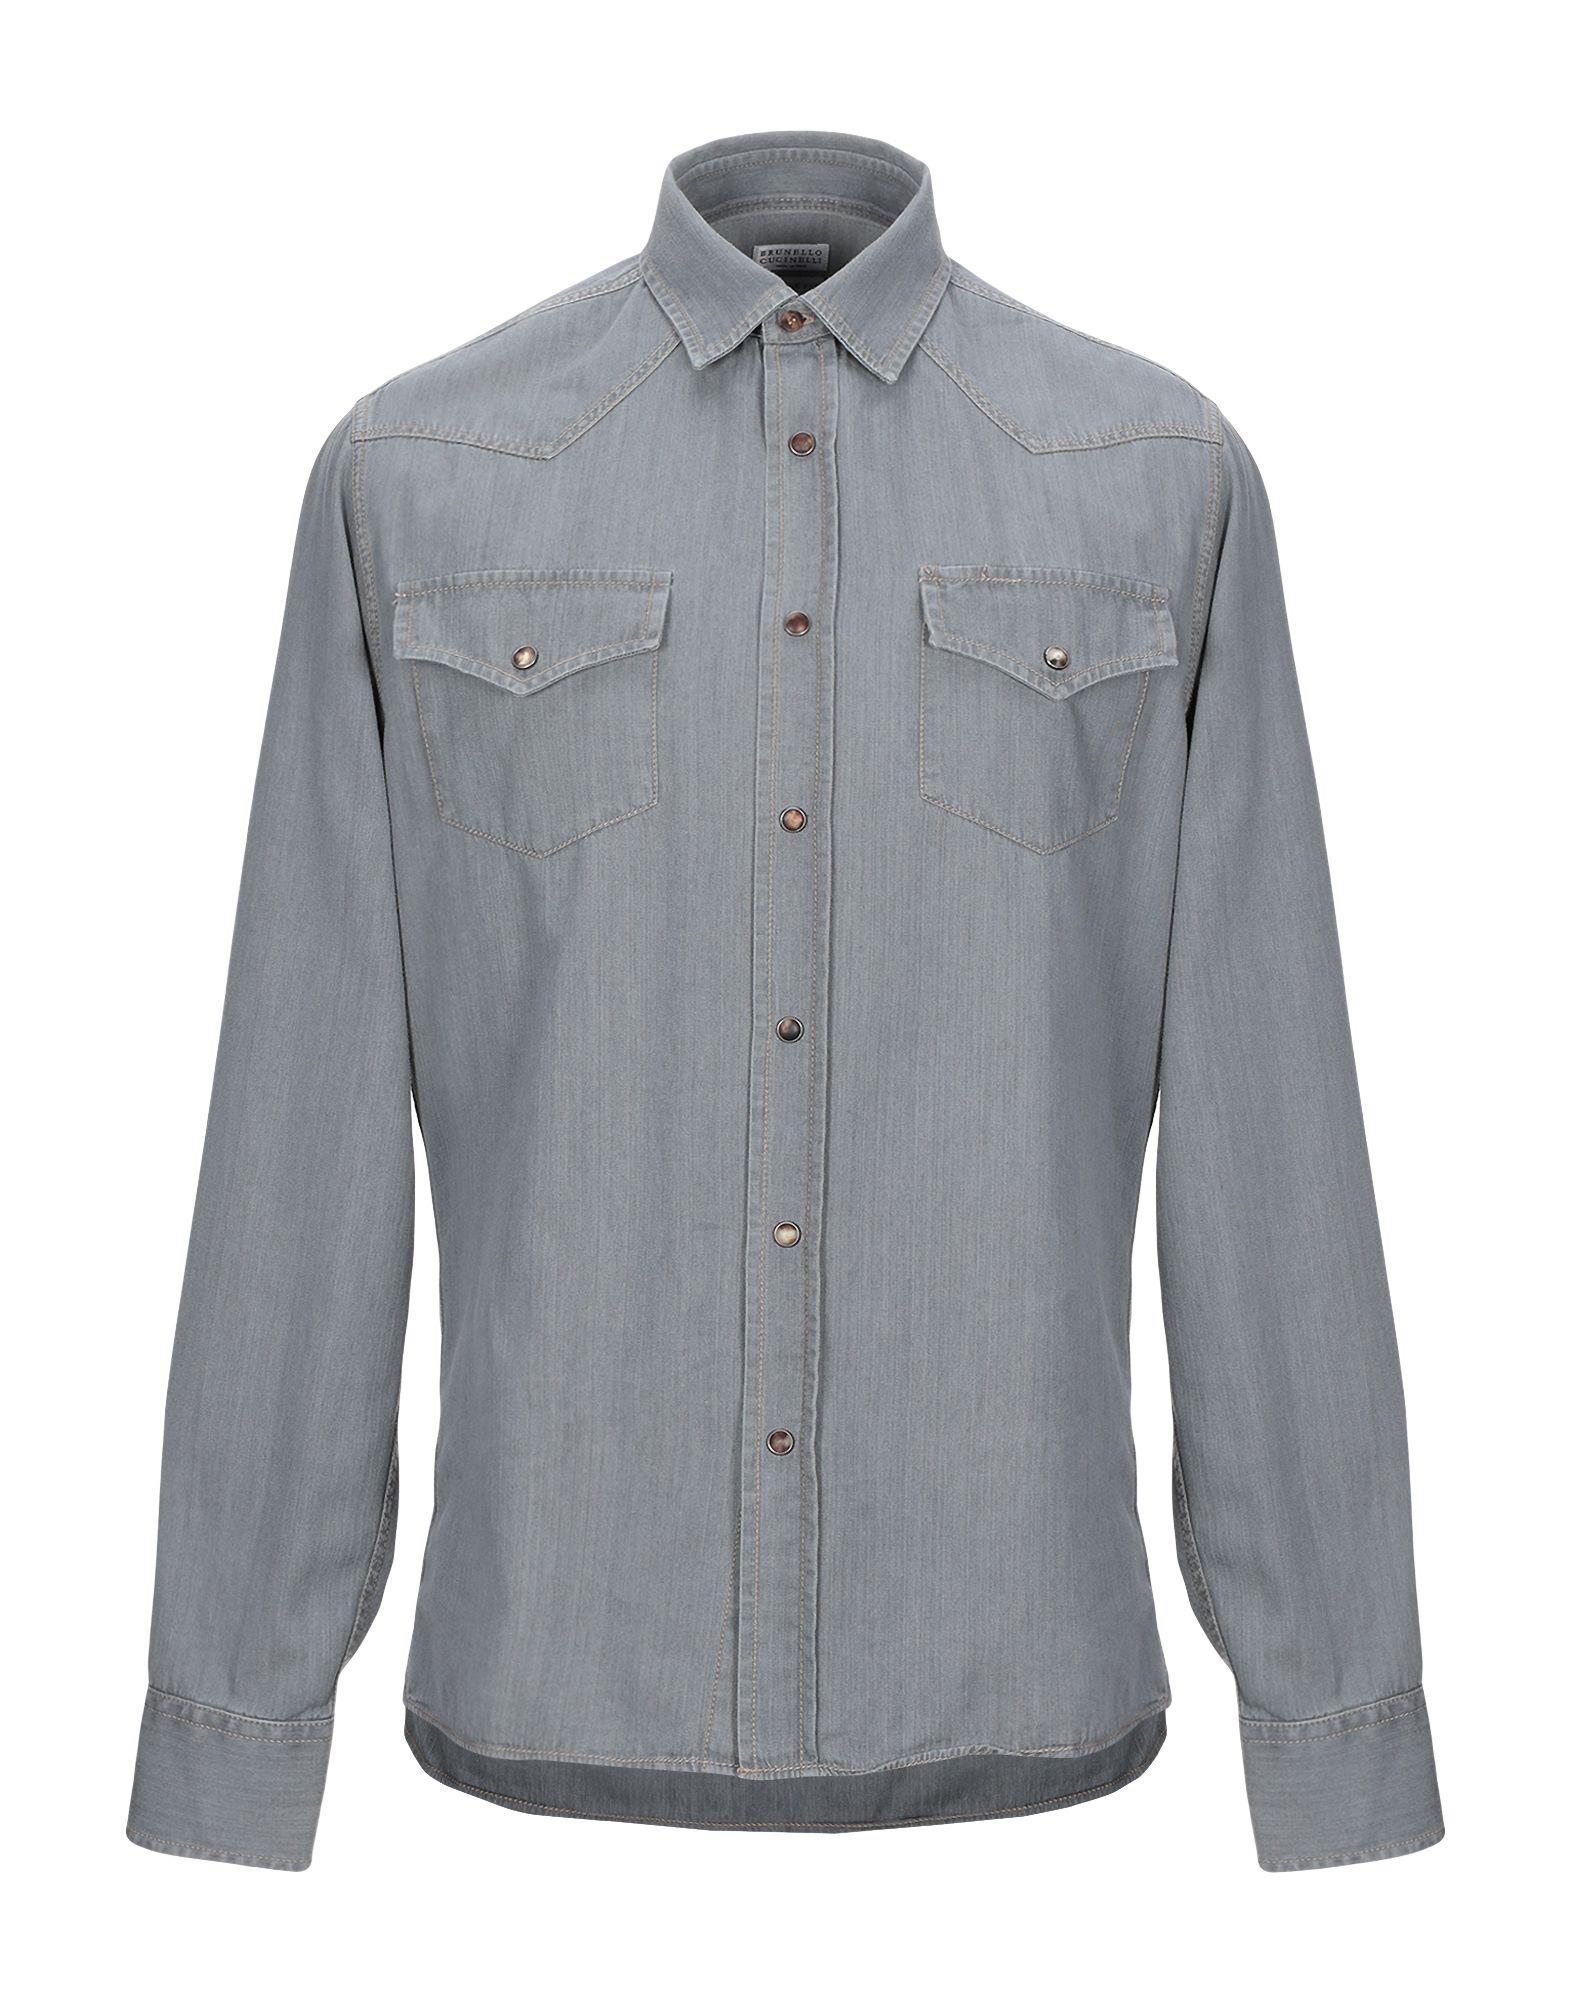 Brunello Cucinelli Denim Shirt in Grey (Gray) for Men - Lyst